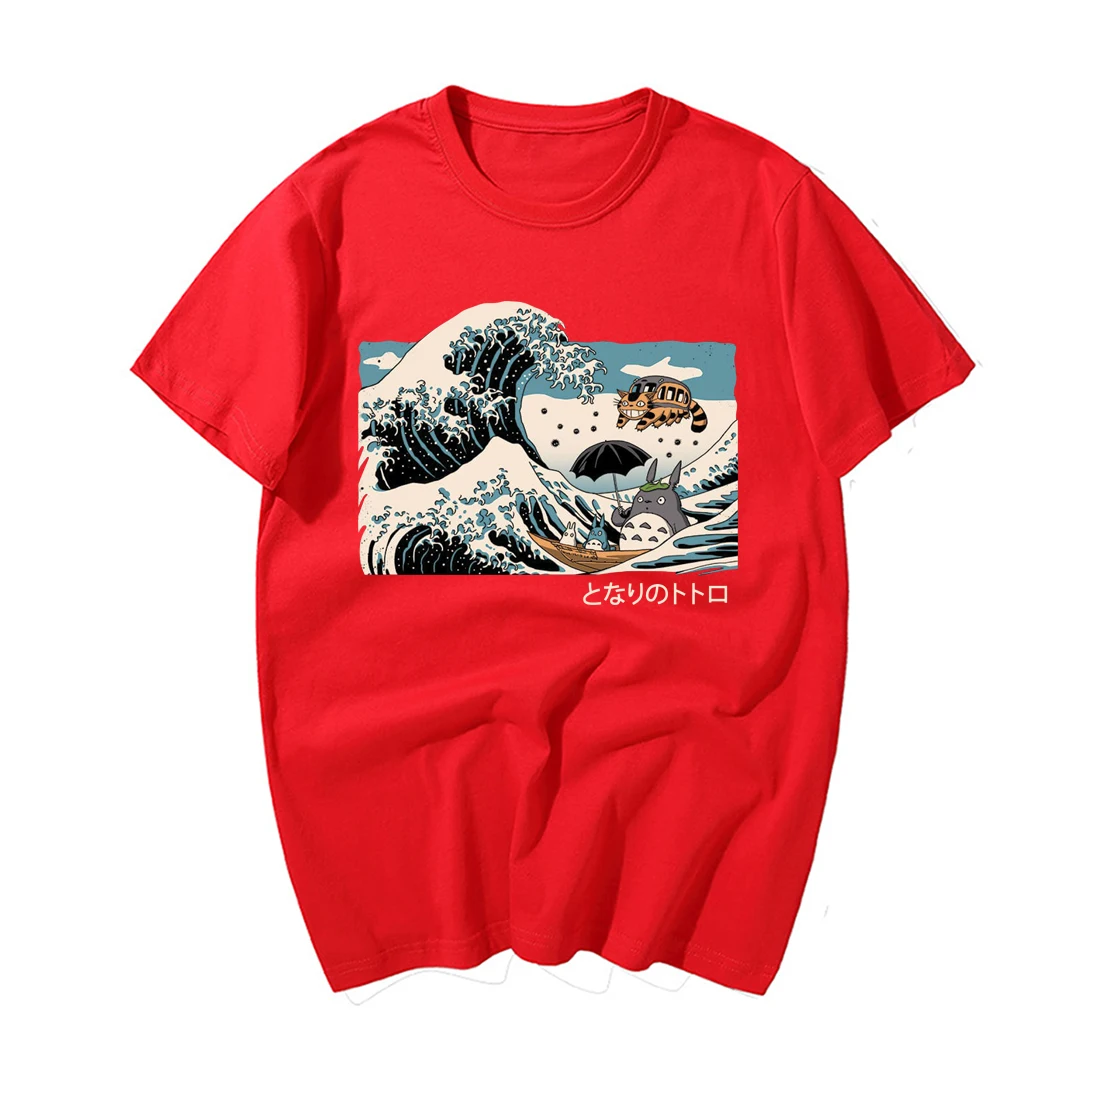 Классическая винтажная Футболка с принтом японского аниме Tonari No Totoro, забавные мужские летние повседневные хлопковые футболки с коротким рукавом, мужские футболки - Цвет: Red  6